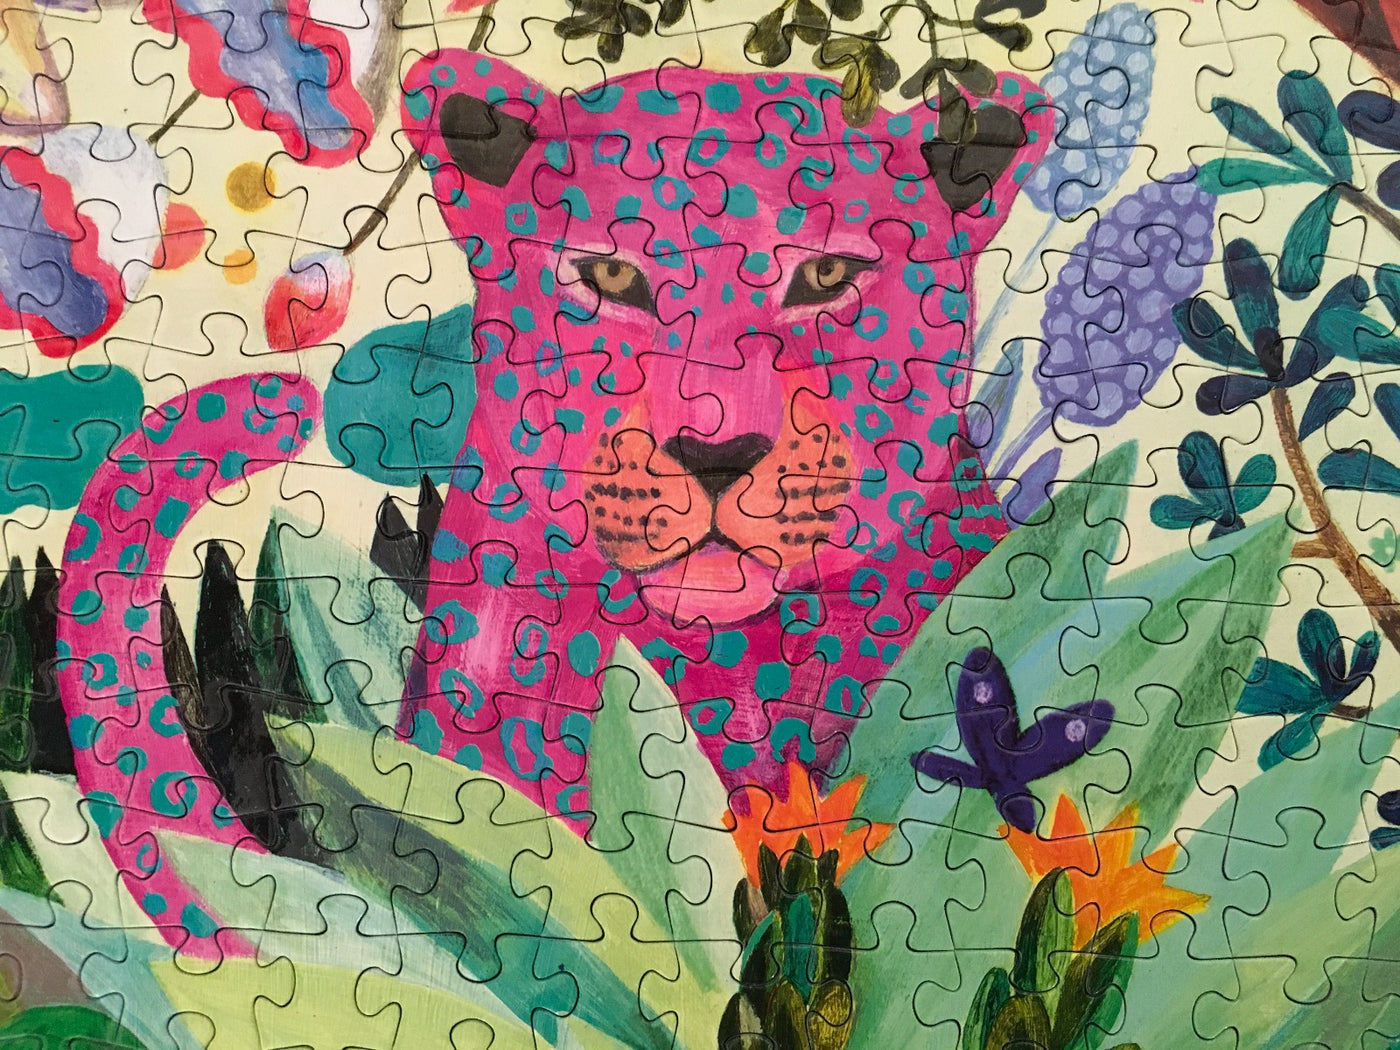 Djeco Gallery 1000 Piece Jigsaw Puzzle, Rainbow Tigers